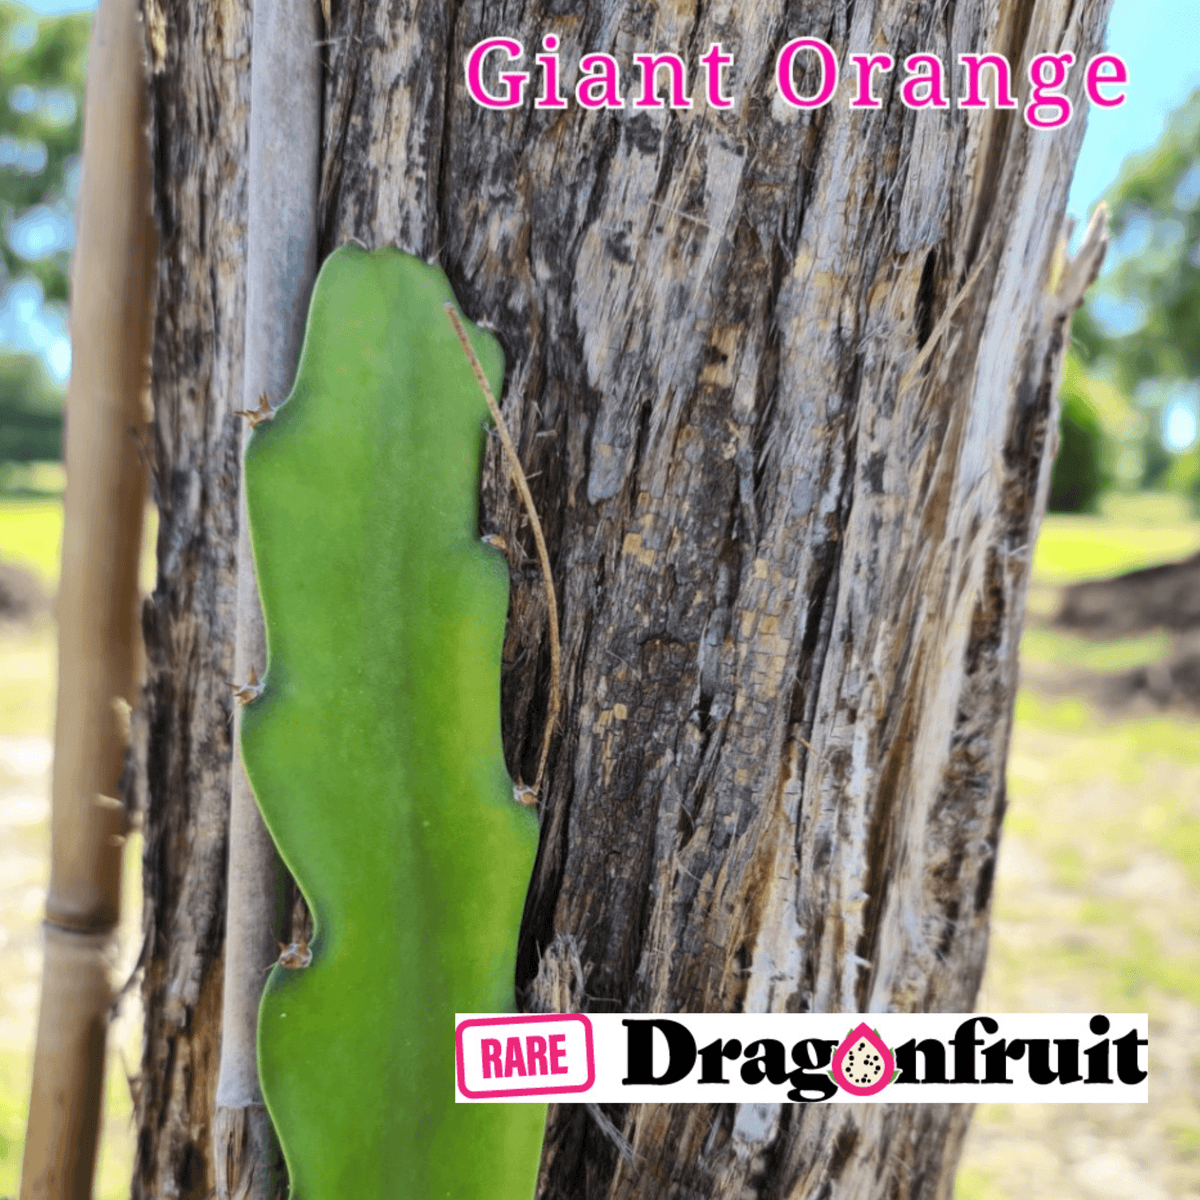 Giant Orange Dragon Fruit Plant - Rare Dragon Fruit